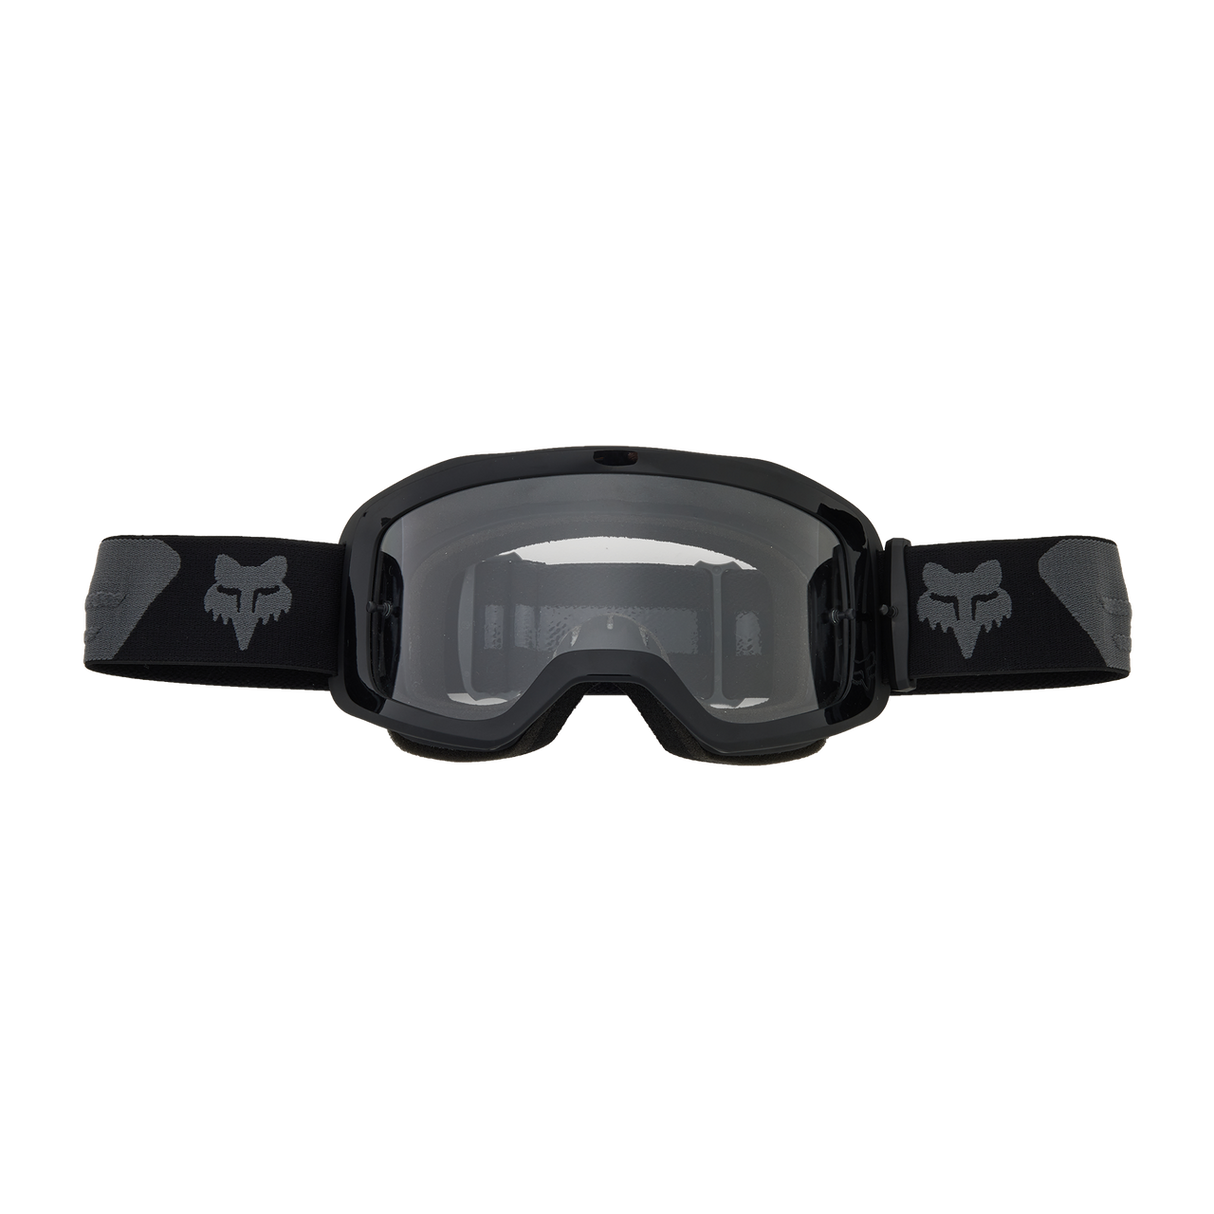 Fox Main Core Goggles Black/Grey